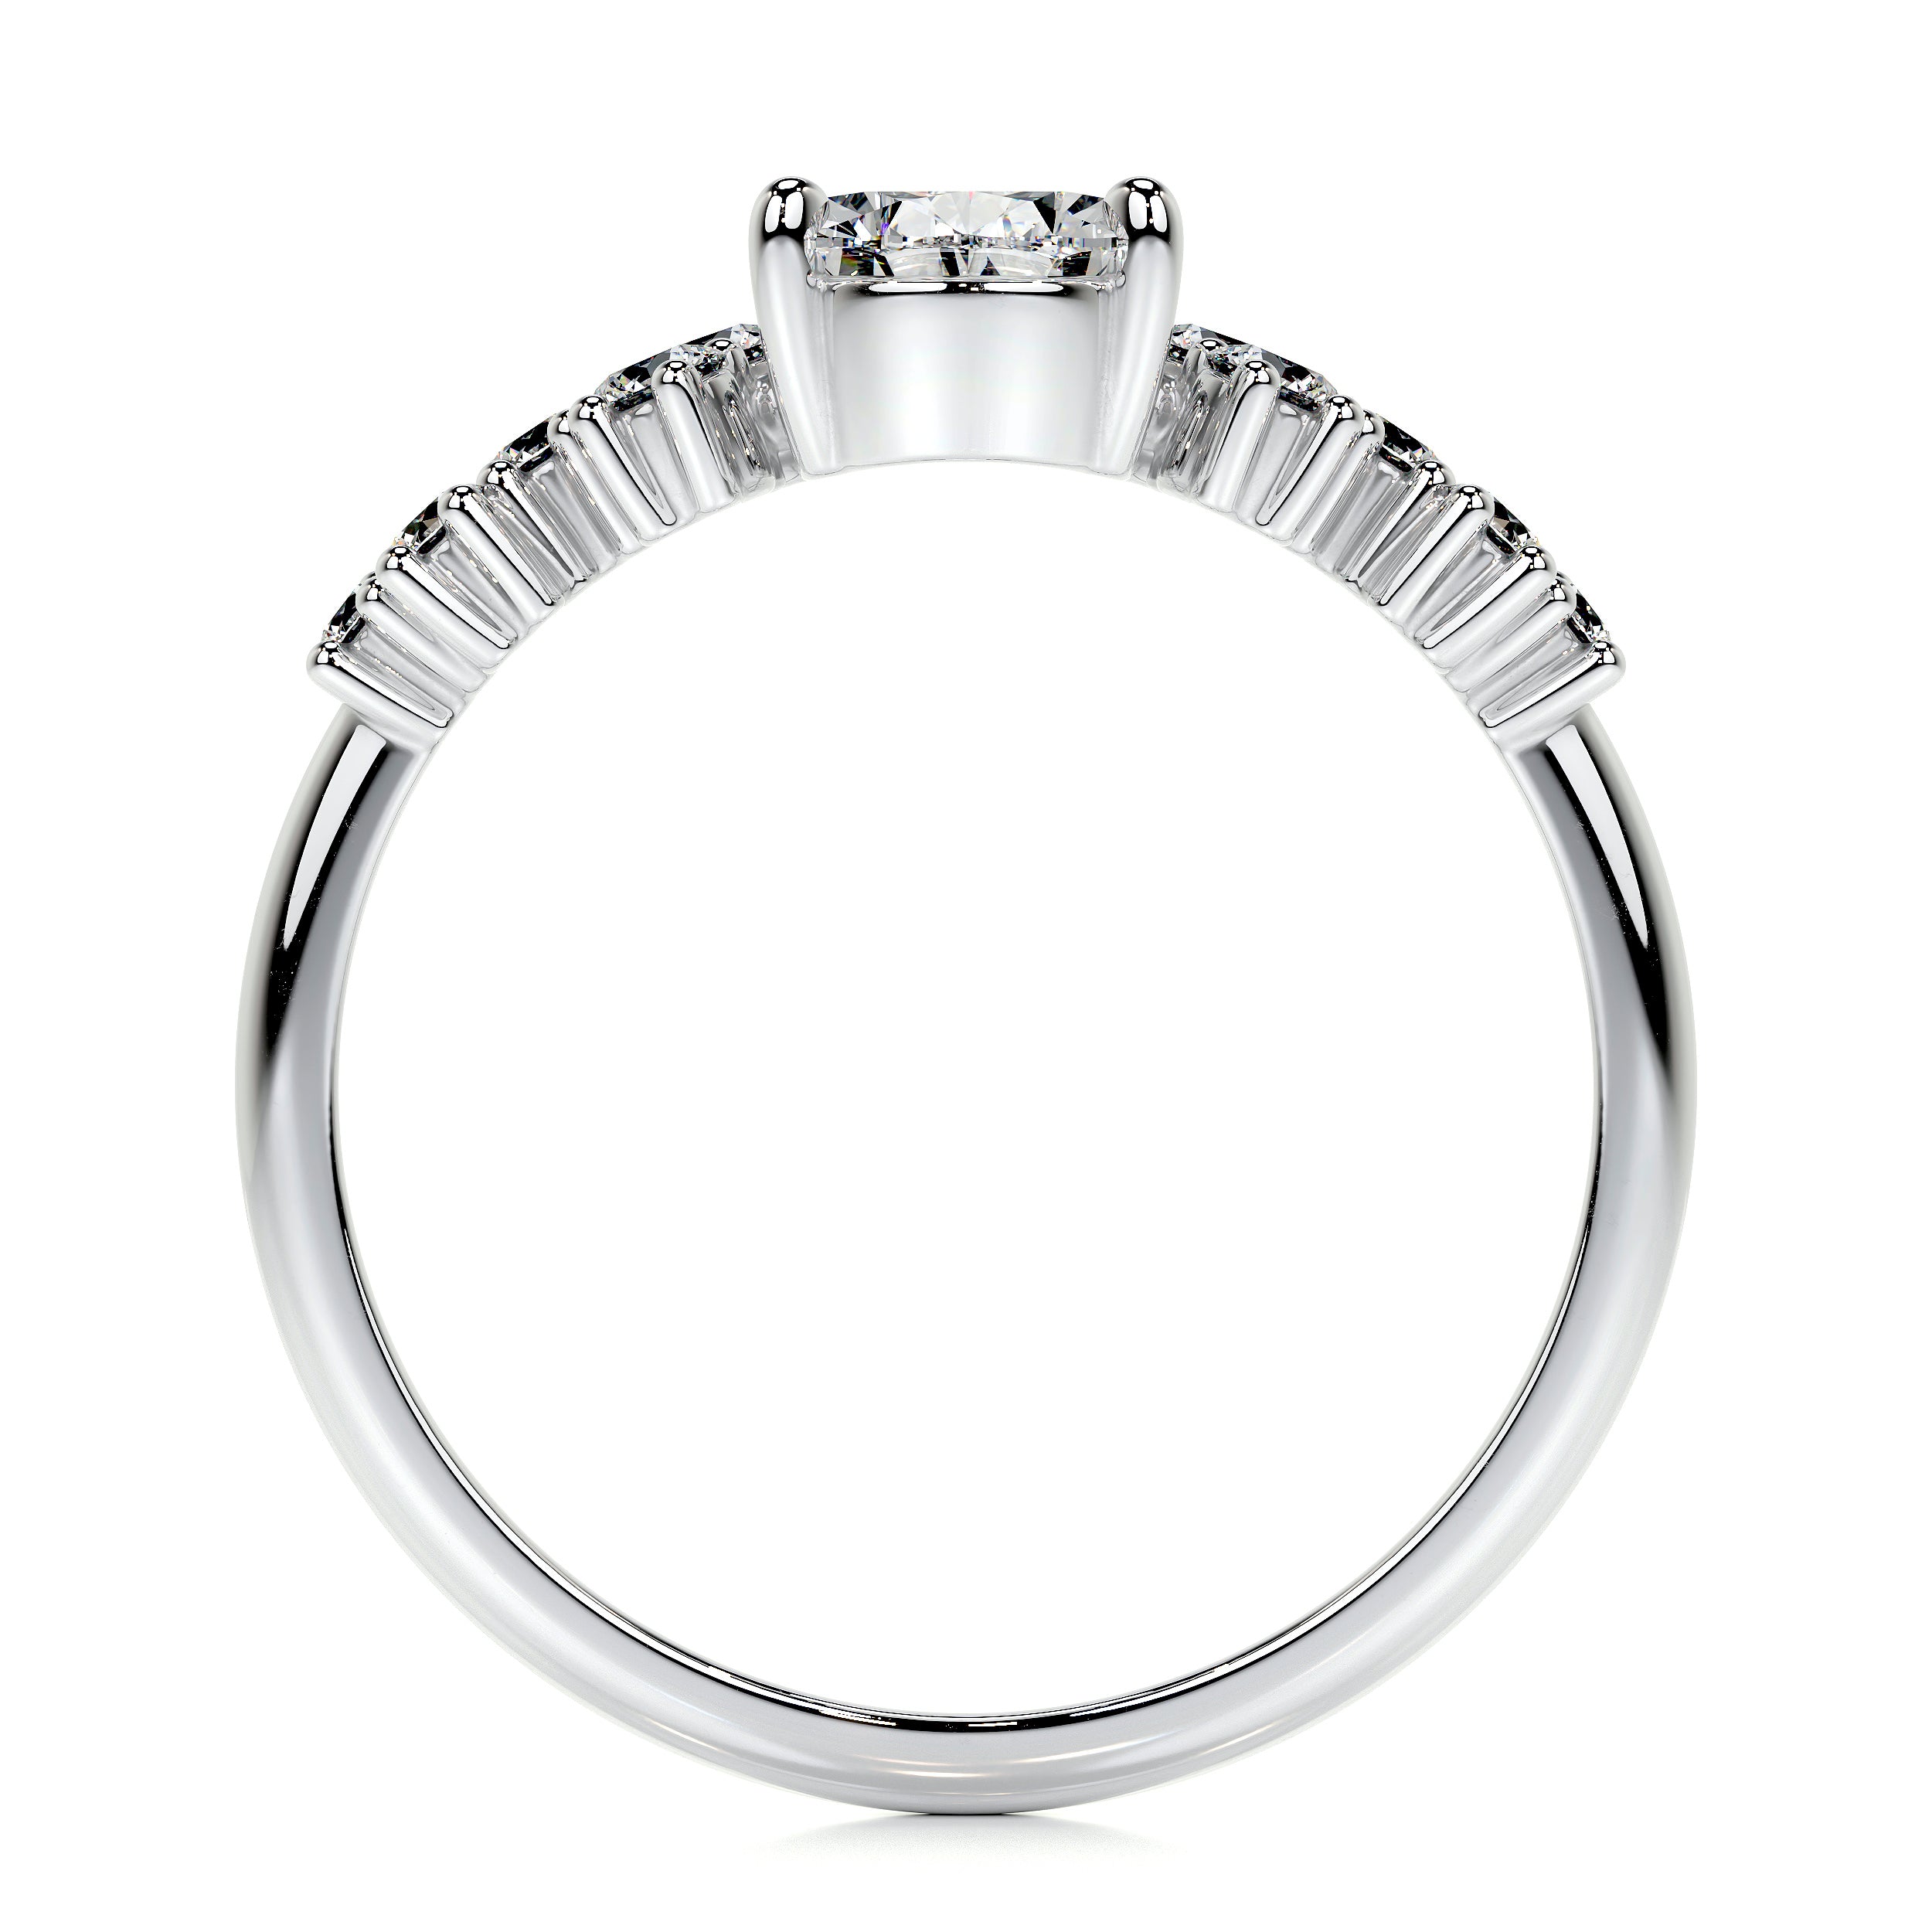 Mabel Lab Grown Diamond Ring   (1.25 Carat) -14K White Gold